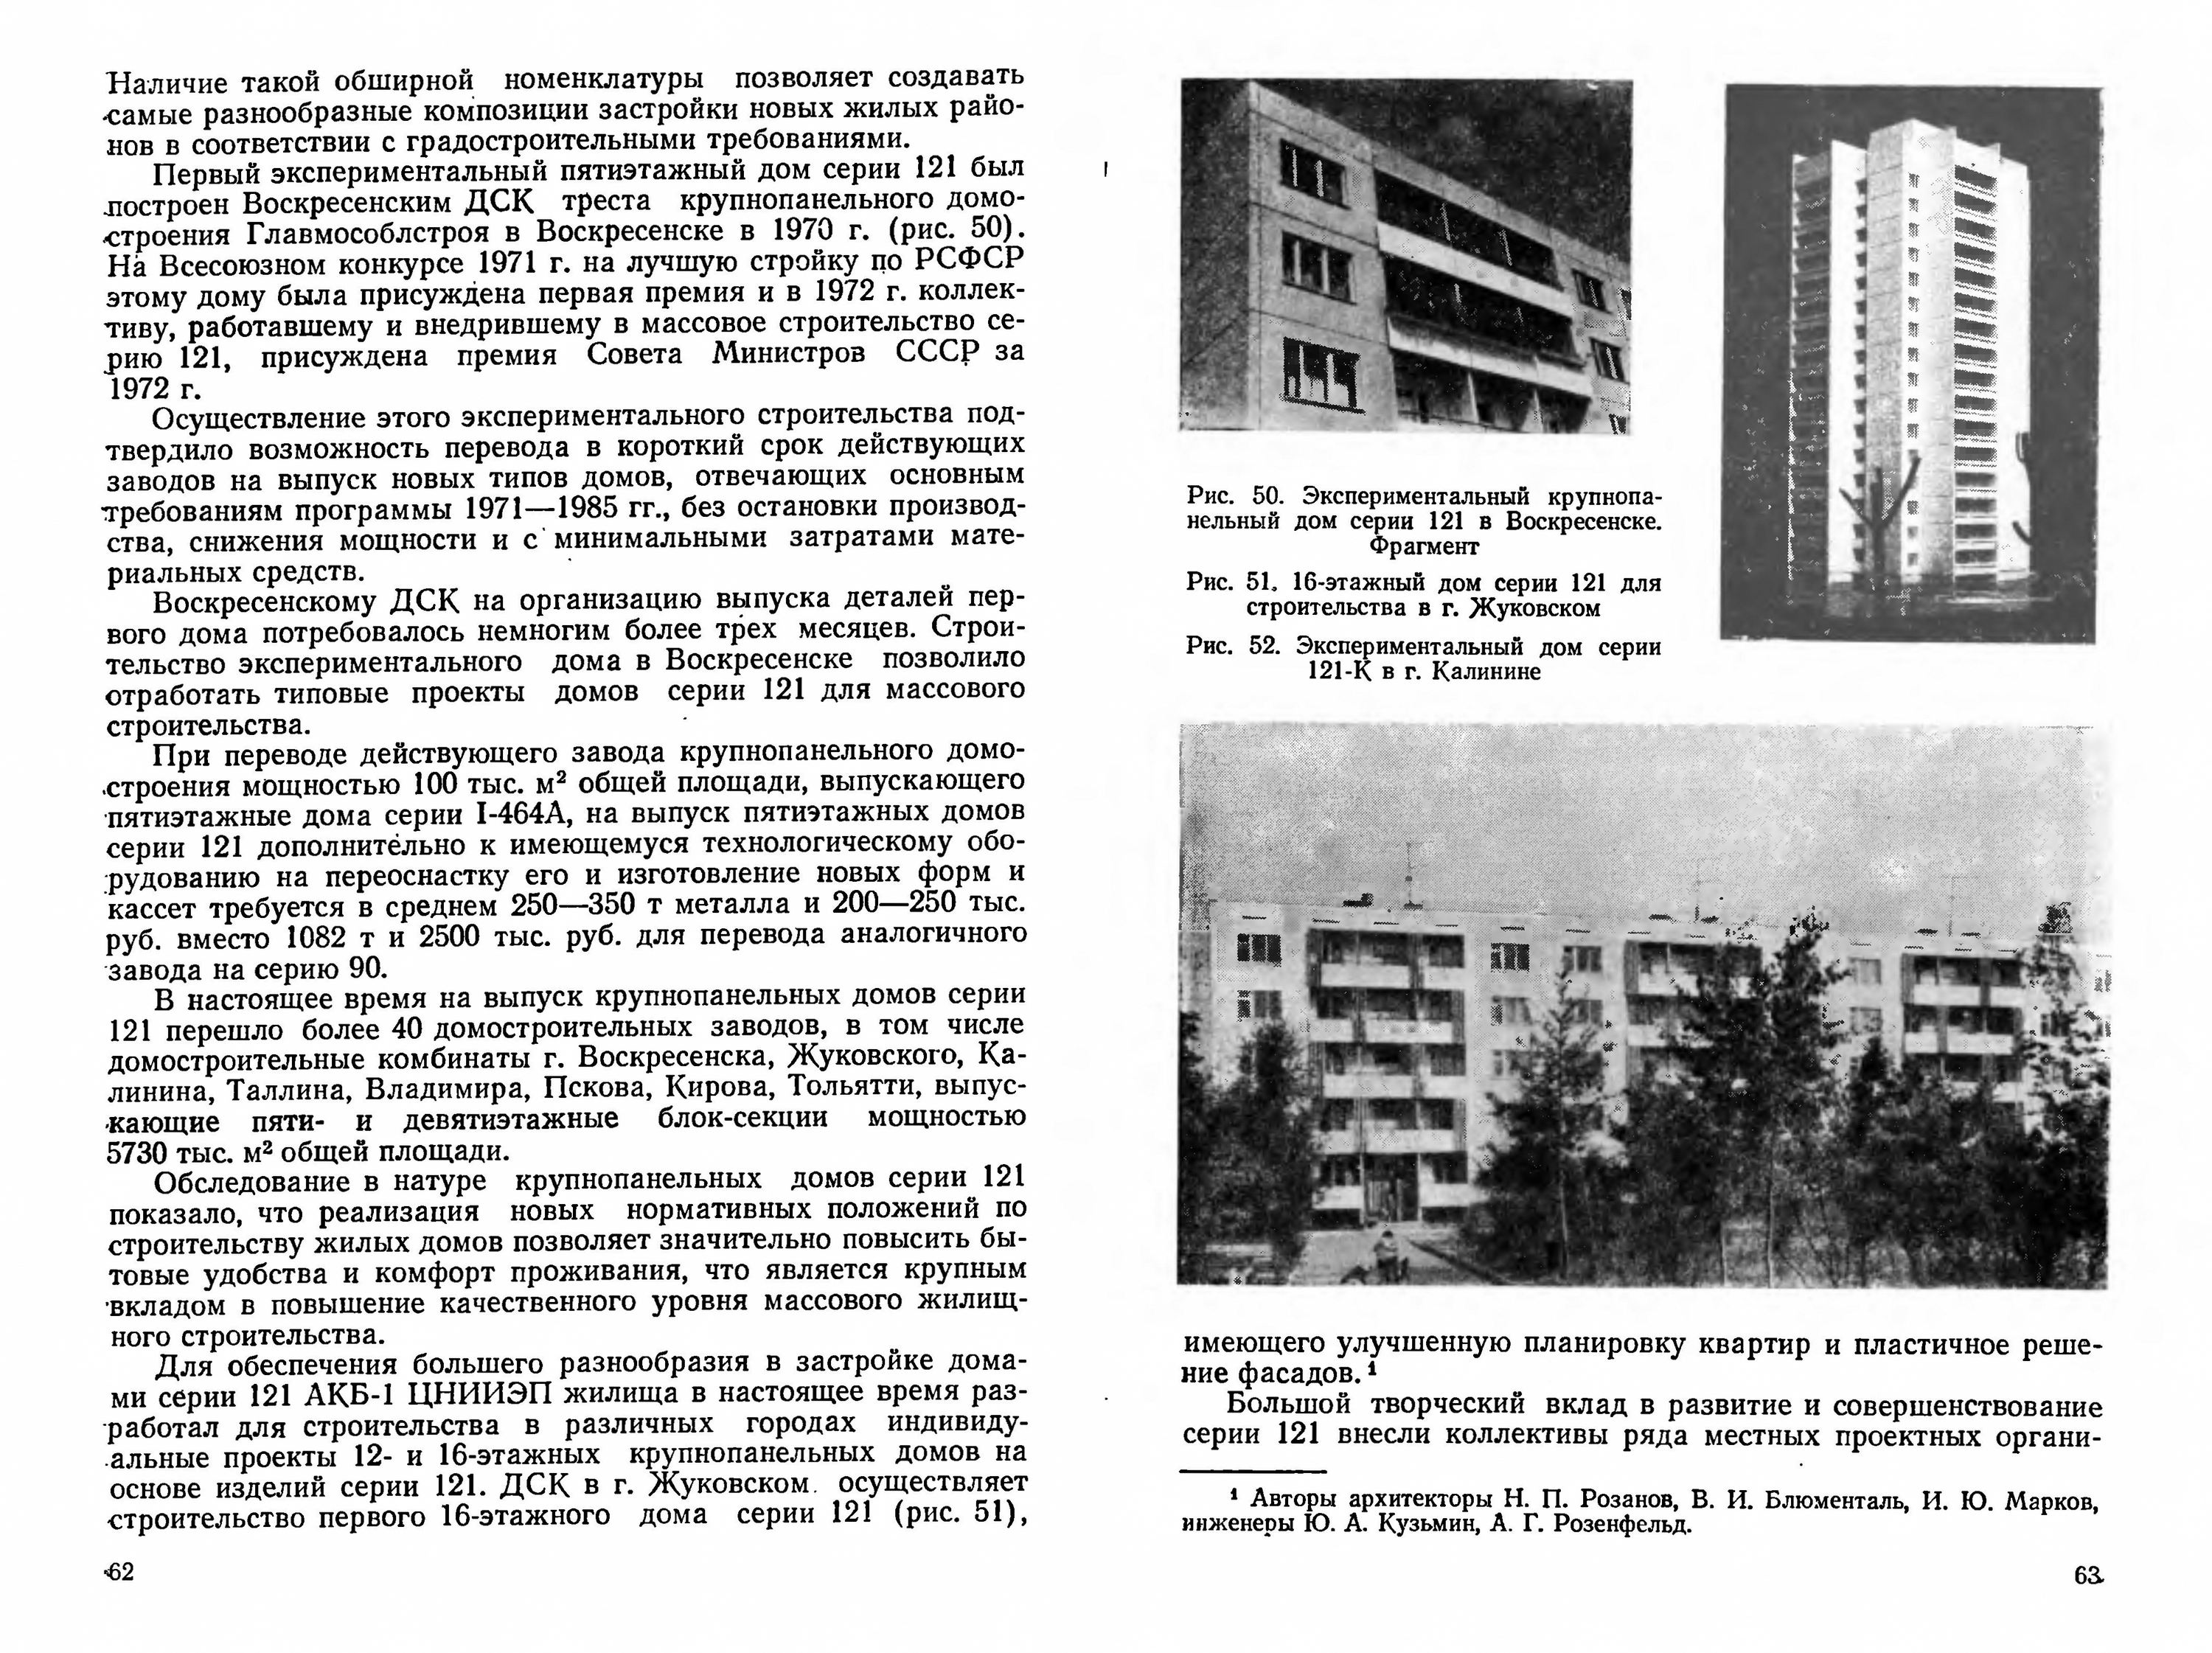 Крупнопанельное домостроение / Н. П. Розанов. — Москва : Стройиздат, 1982